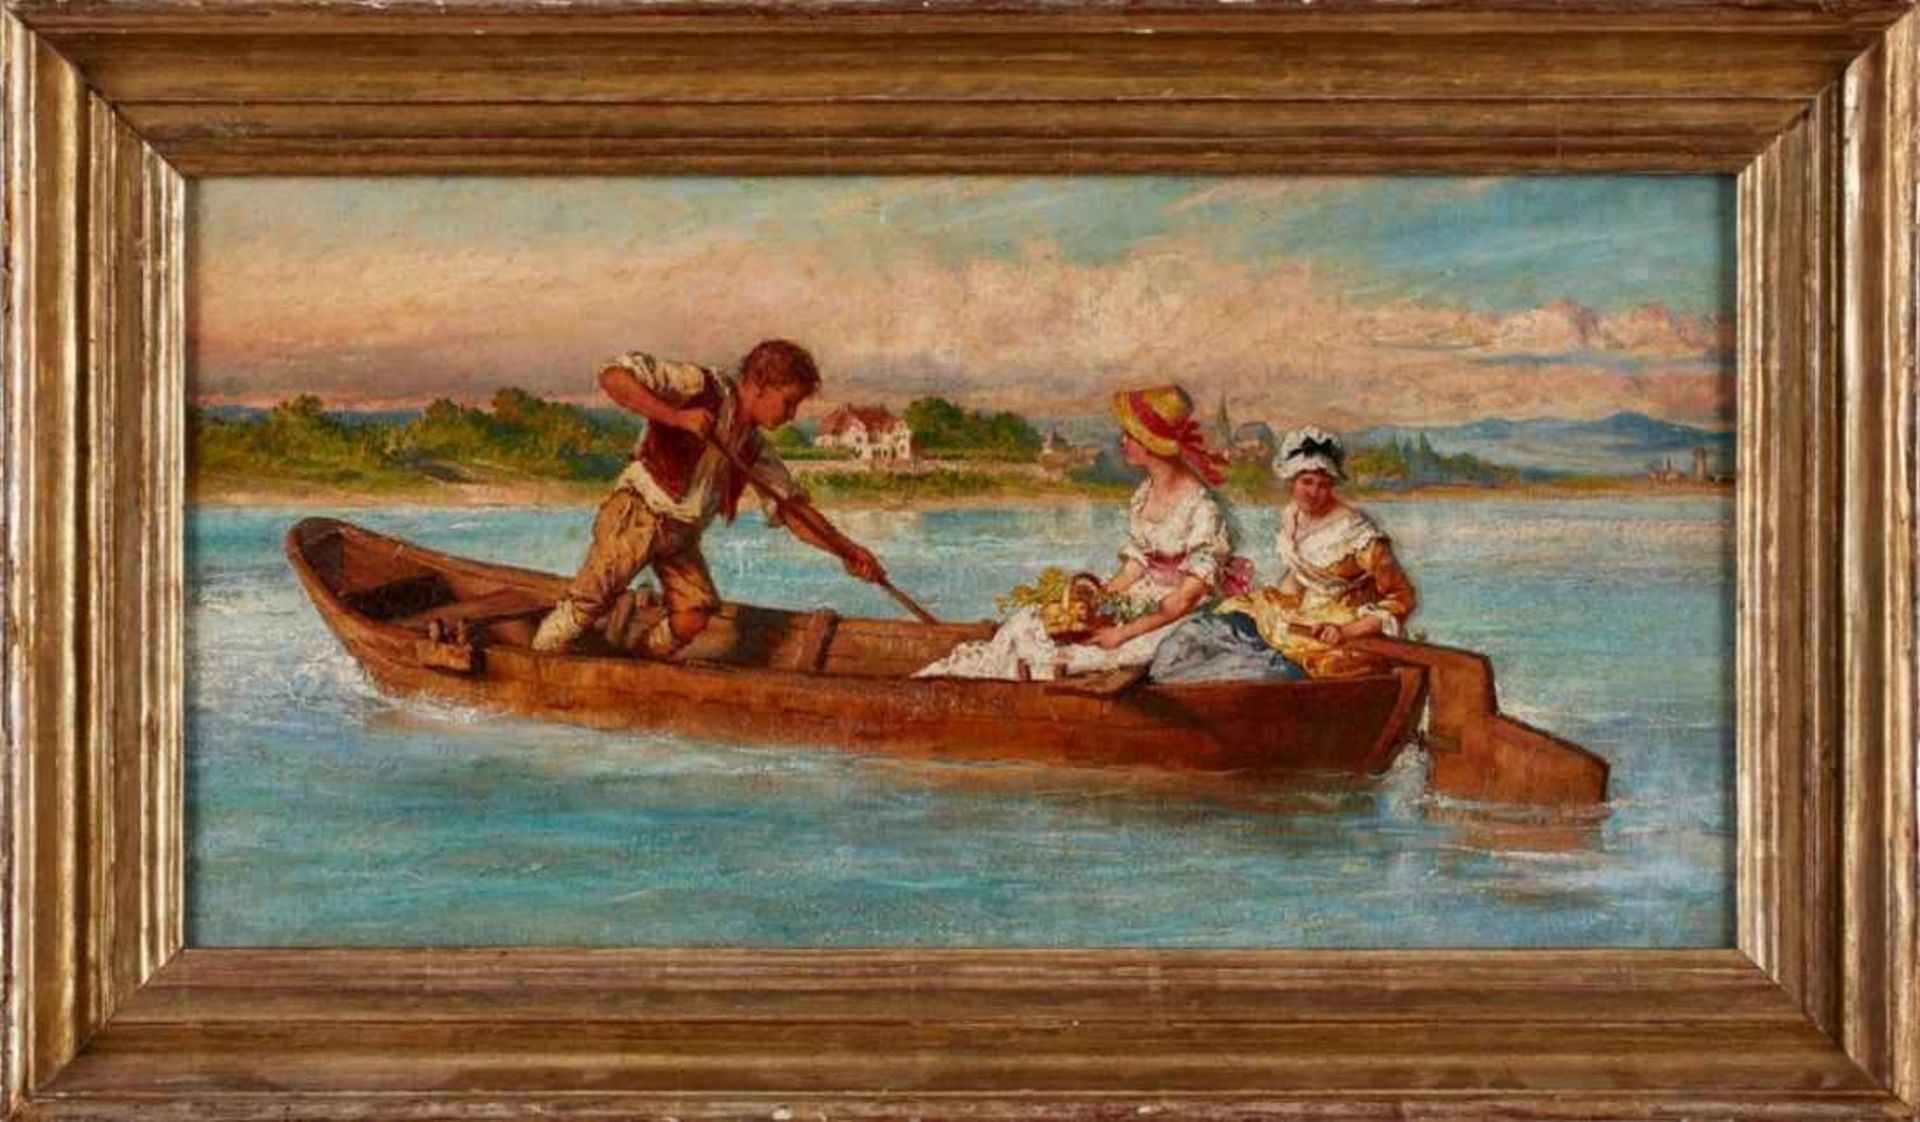 Gemälde Norbert Schrödl 1842 Wien - 1912 Kronberg Landschafts- u. Genremaler. Schüler von Jacob